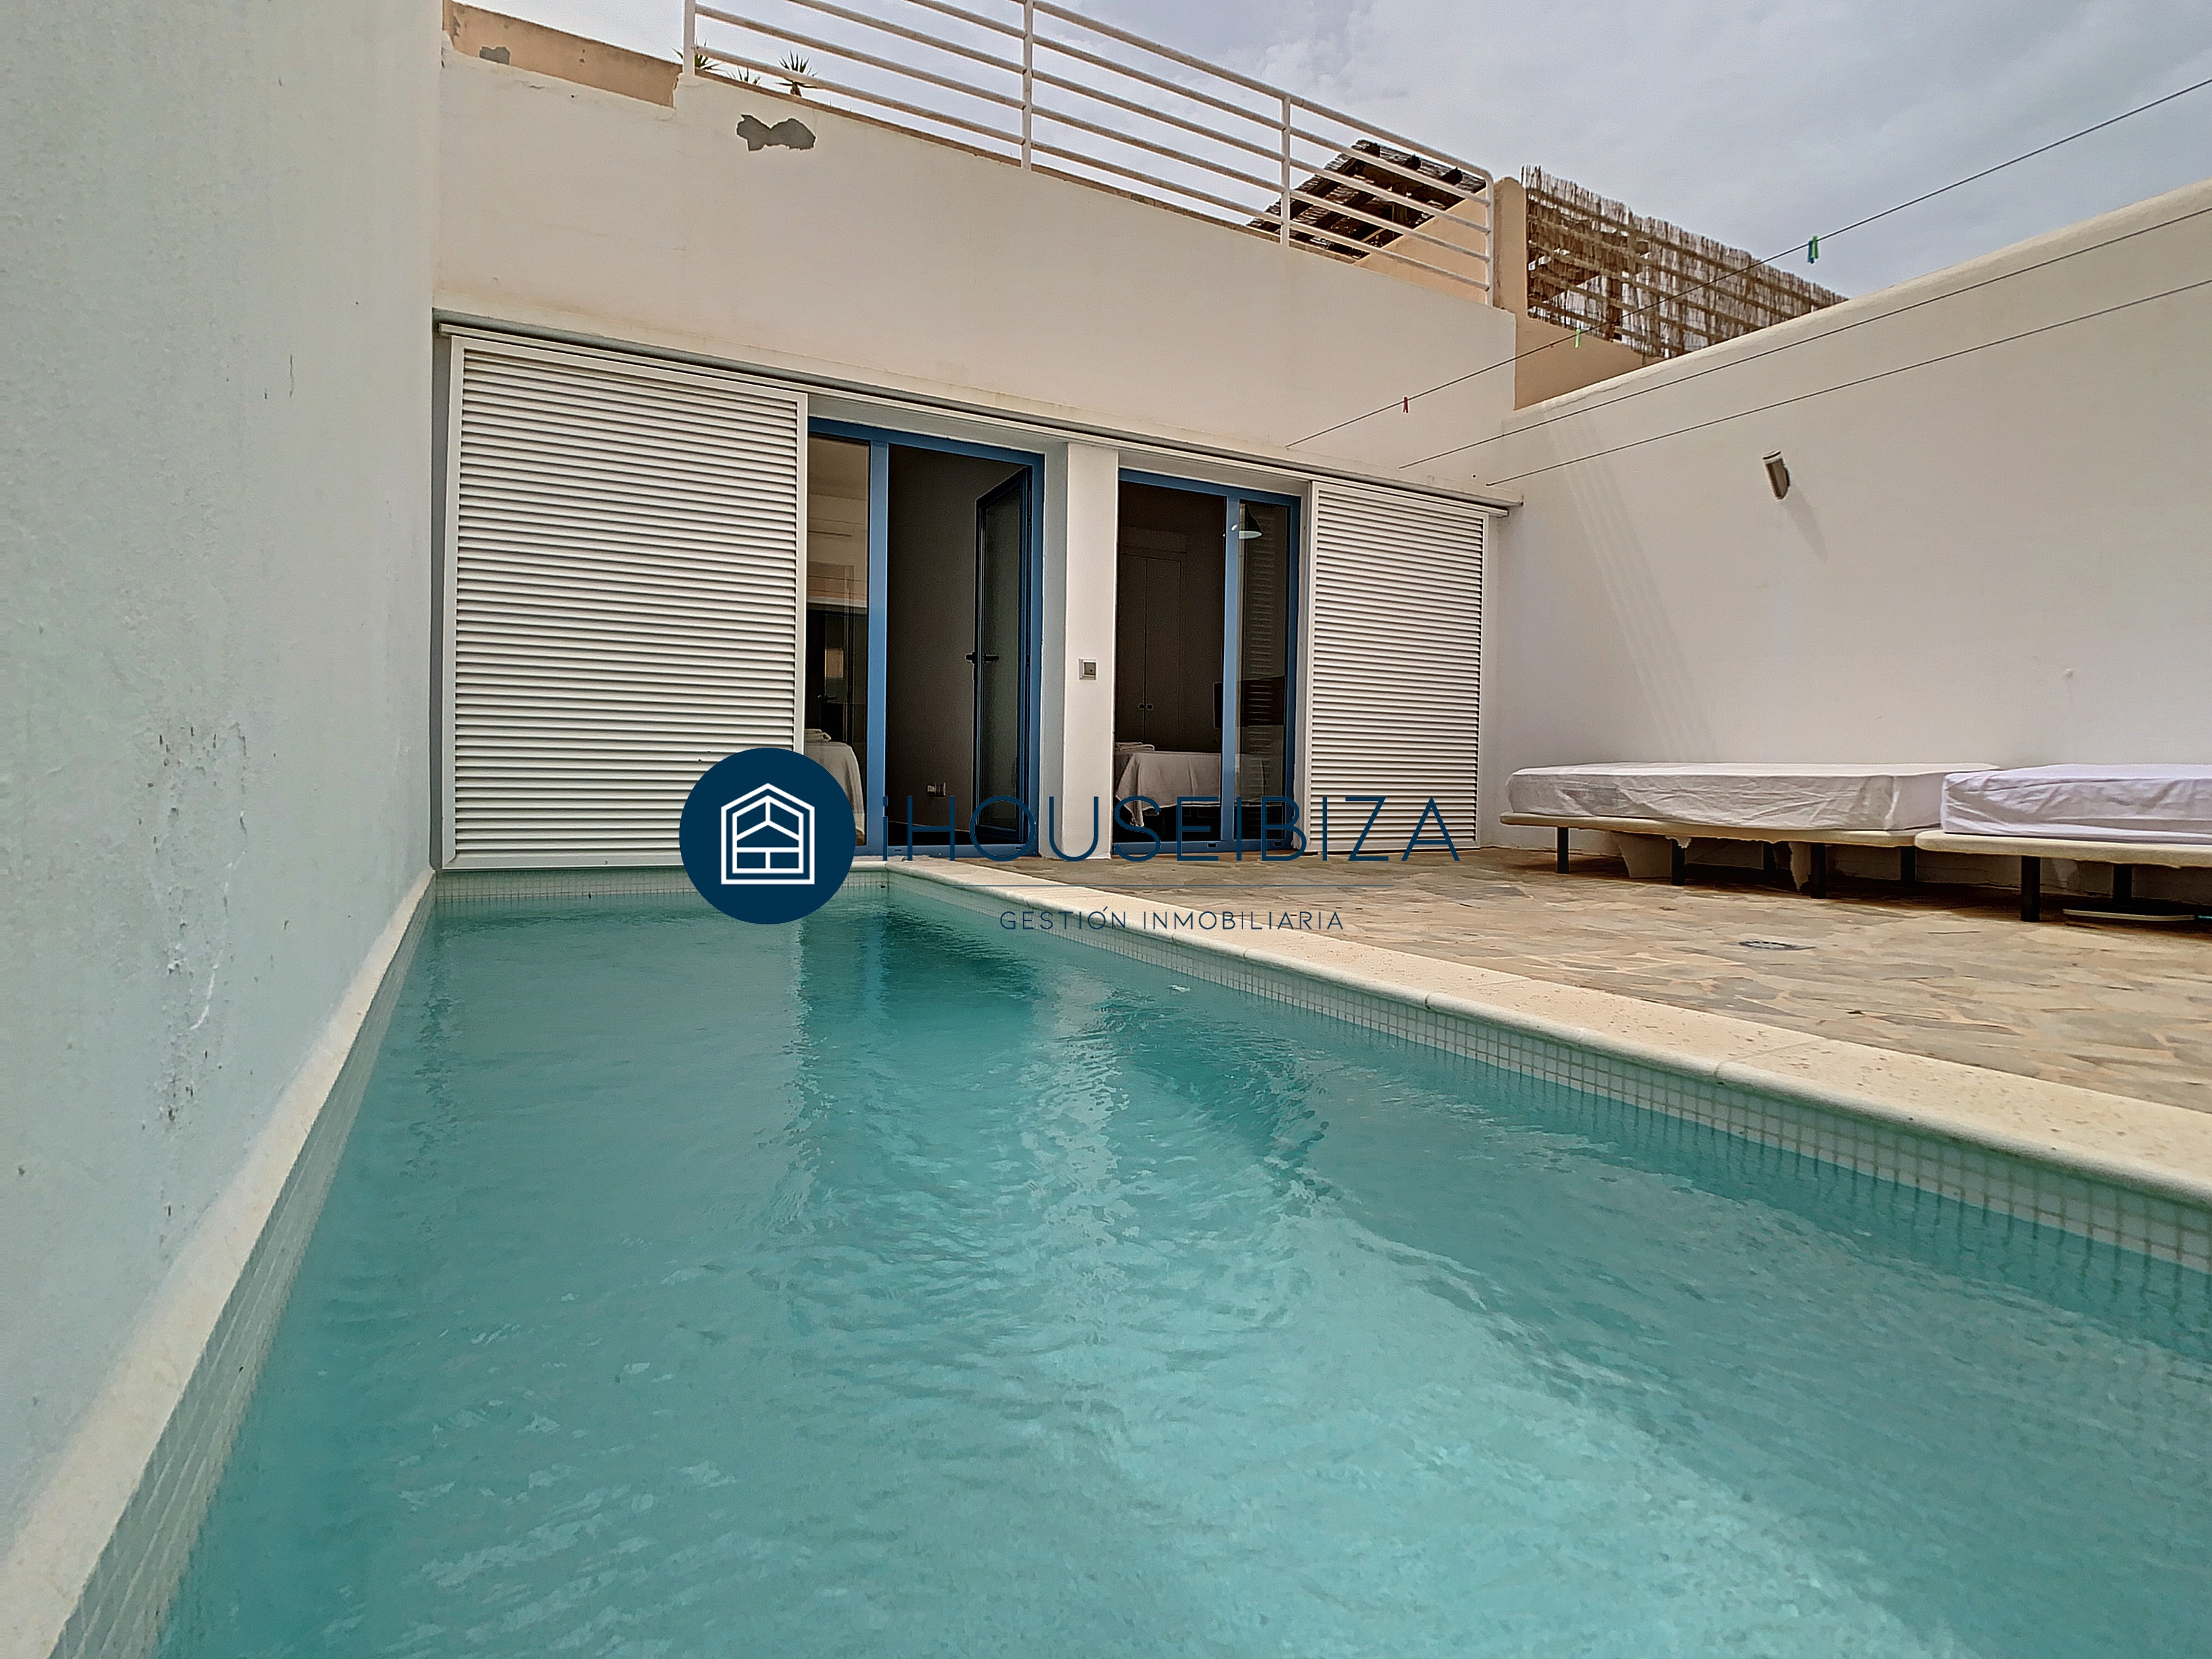 Magnifique maison à vendre avec piscine privée.